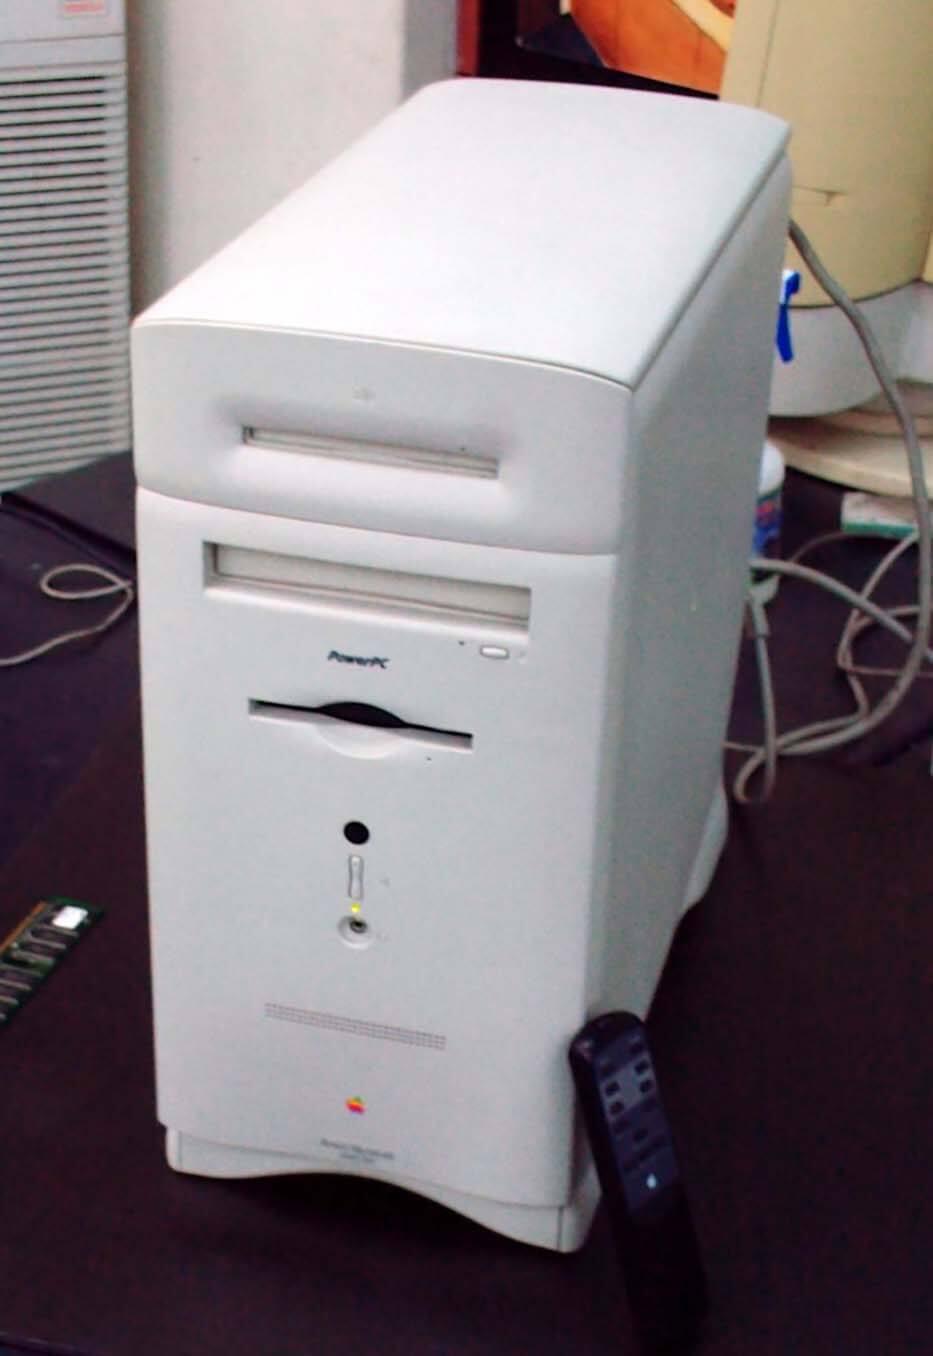 Power Macintosh 6500/250